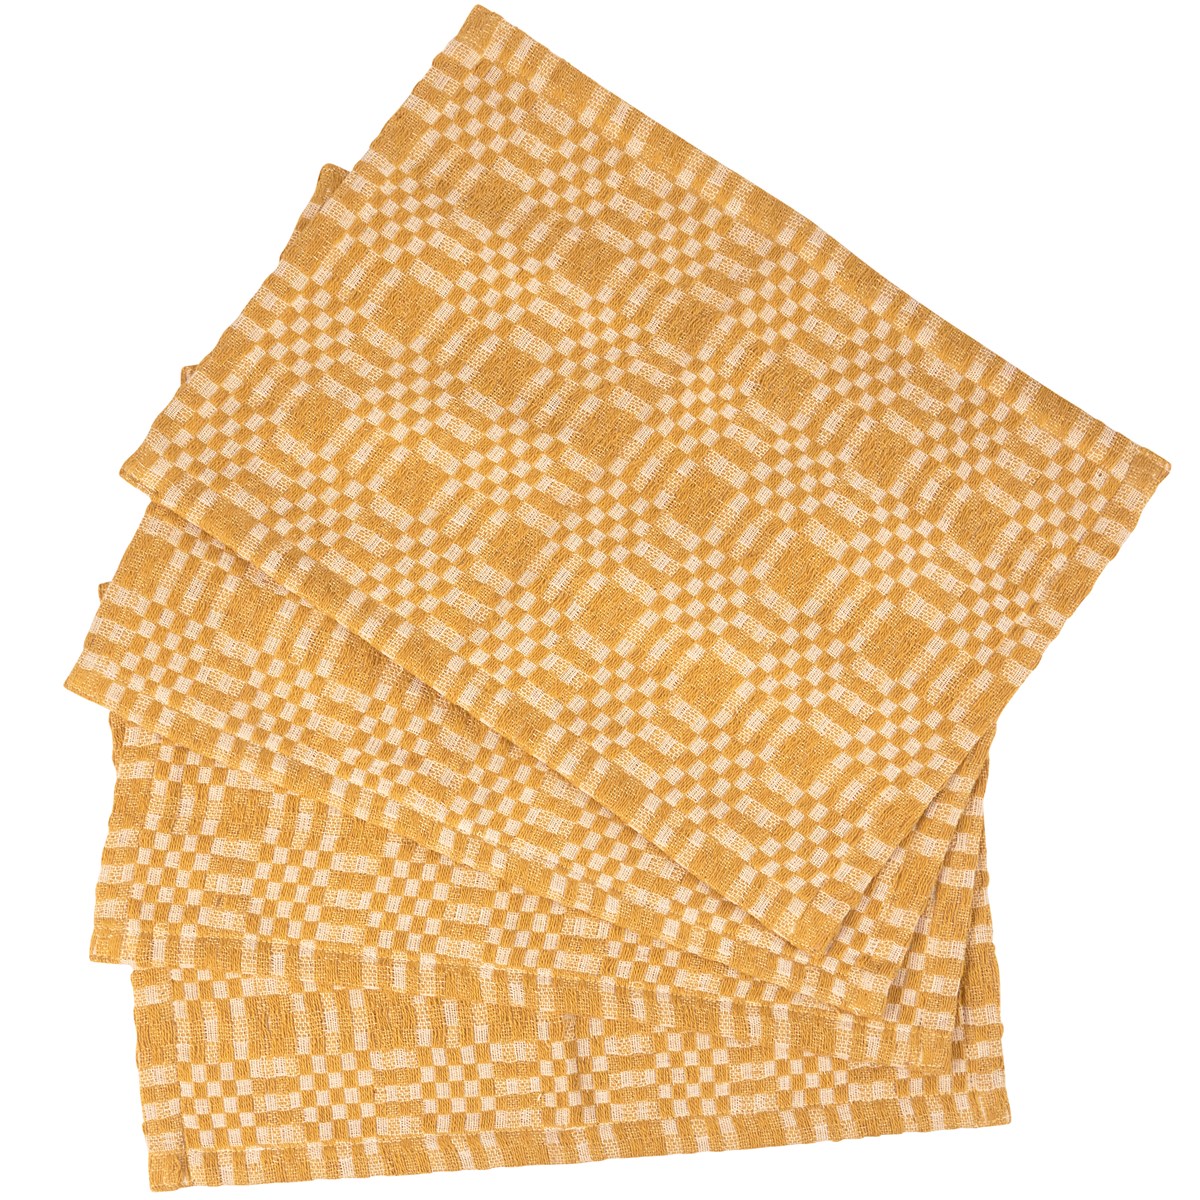 Gold Check Placemat Set - Cotton